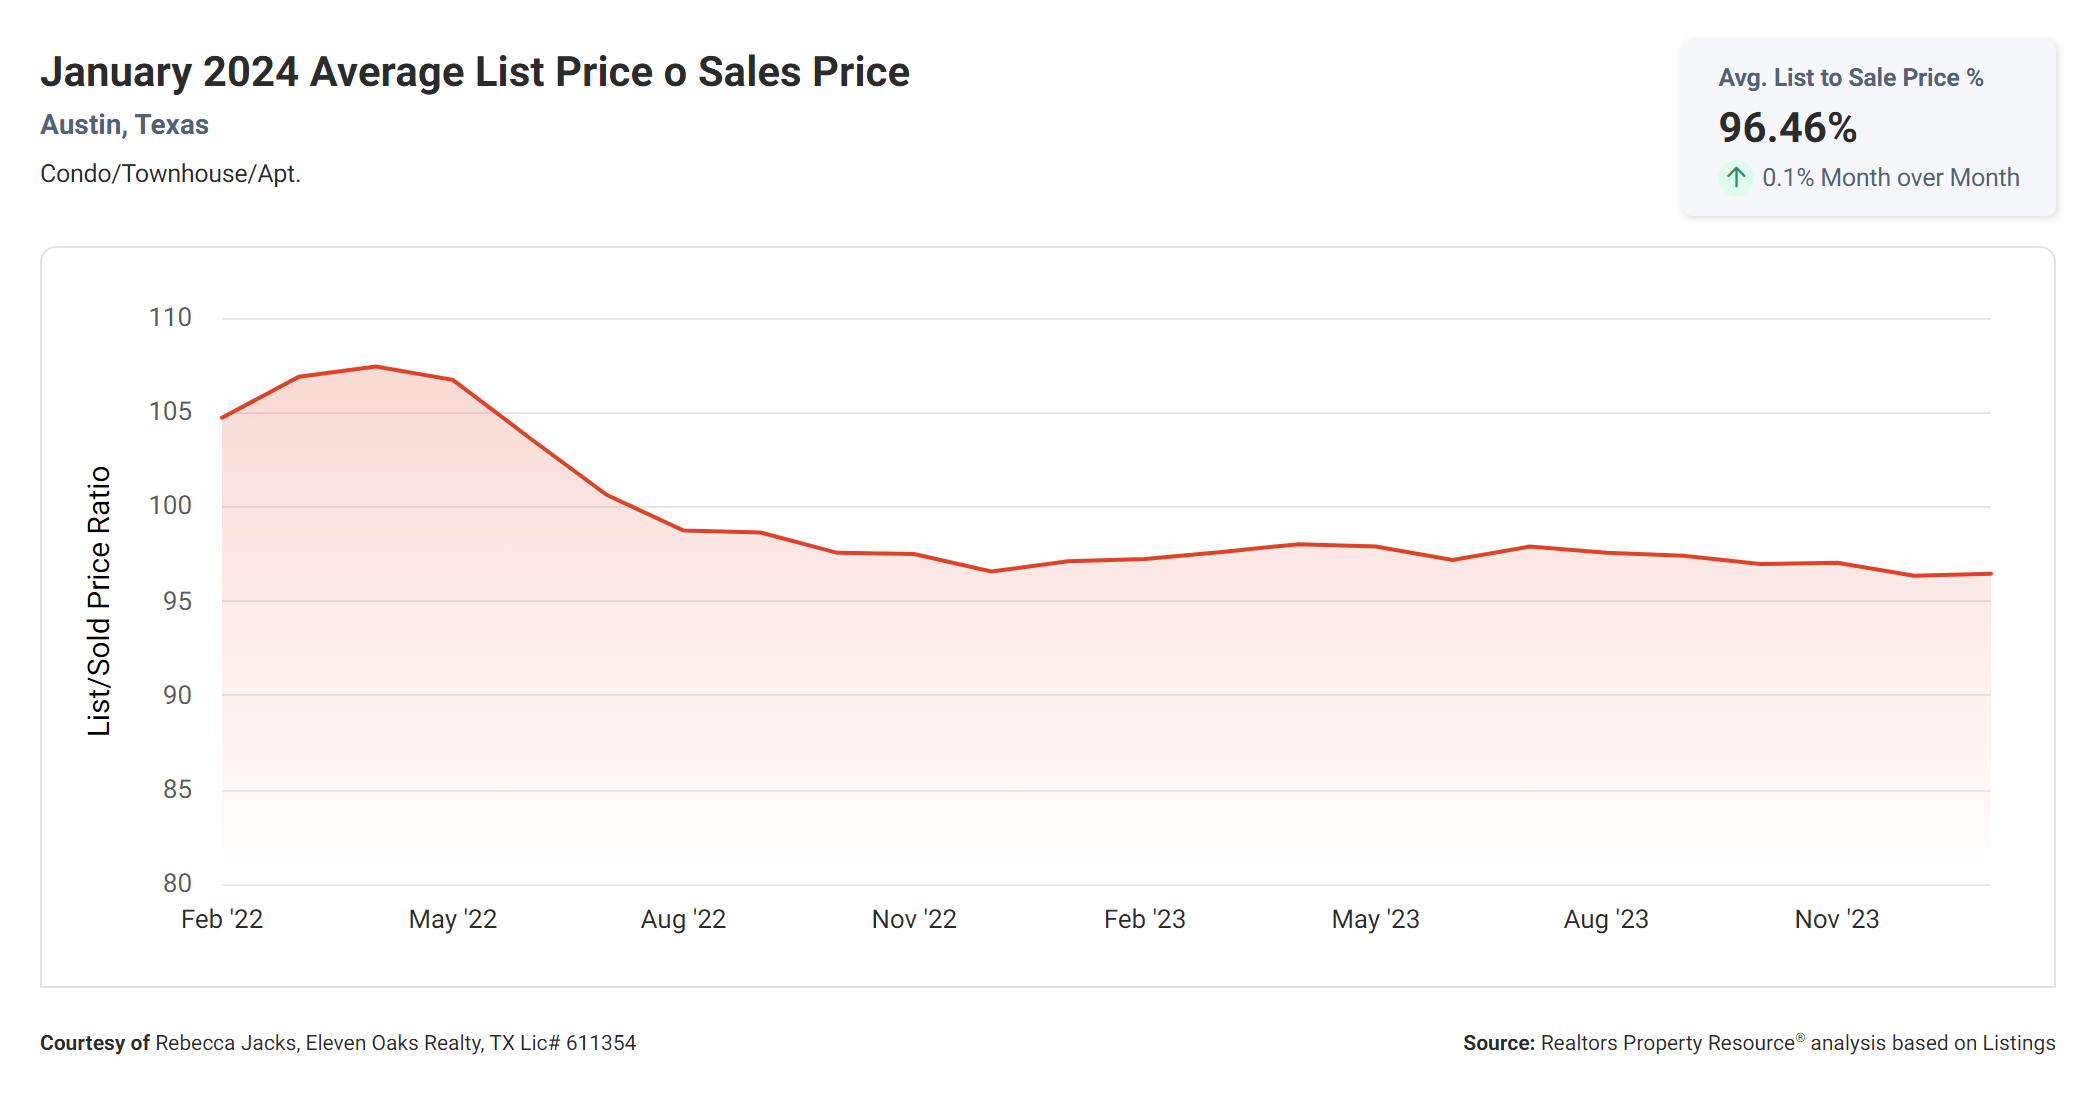 January 2024 Austin condos average list price to sales price